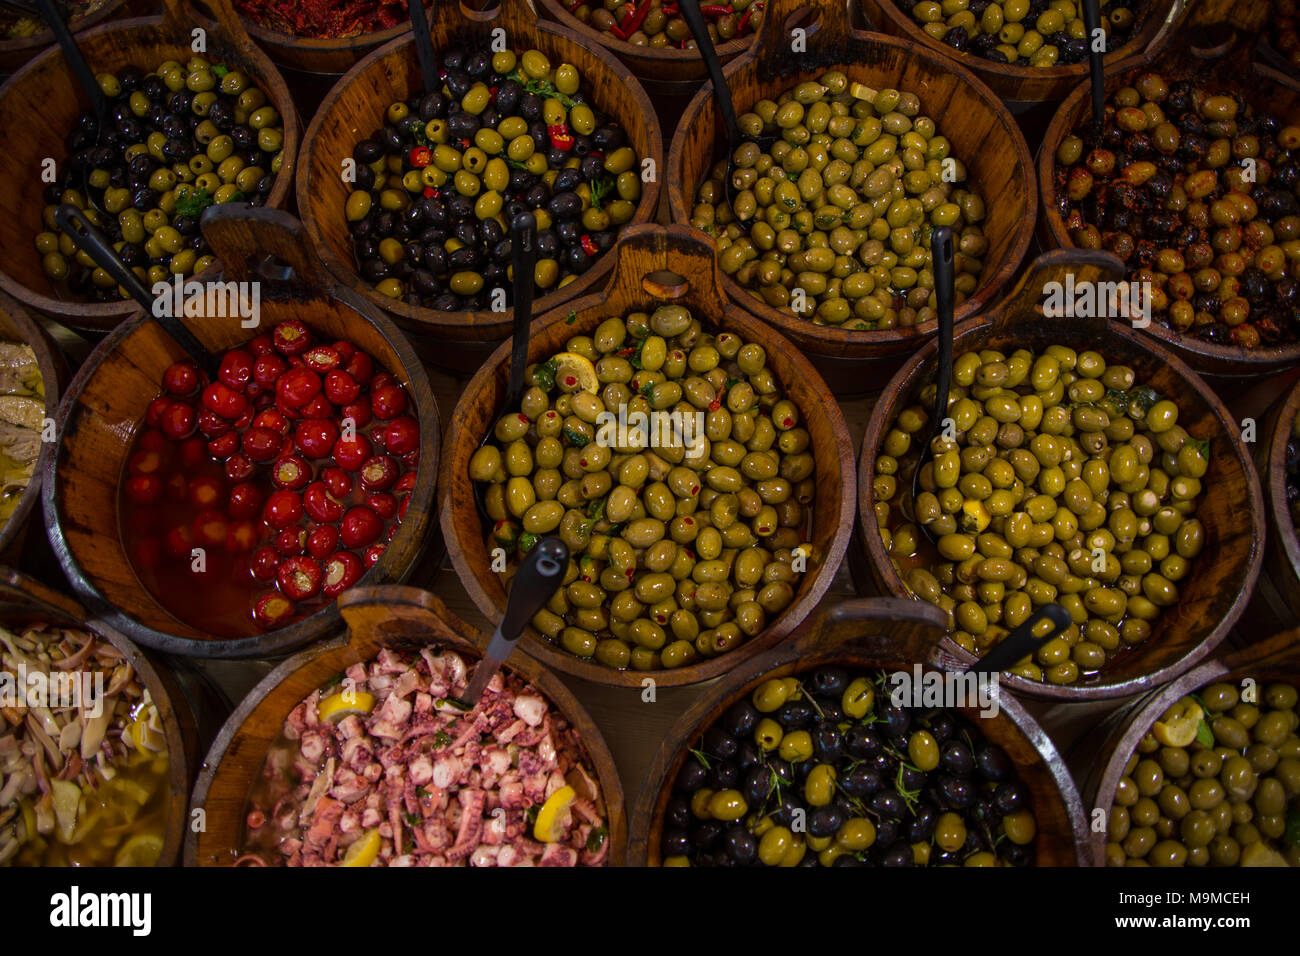 Les olives et les légumes dans des fûts de bois au cours du marché Banque D'Images